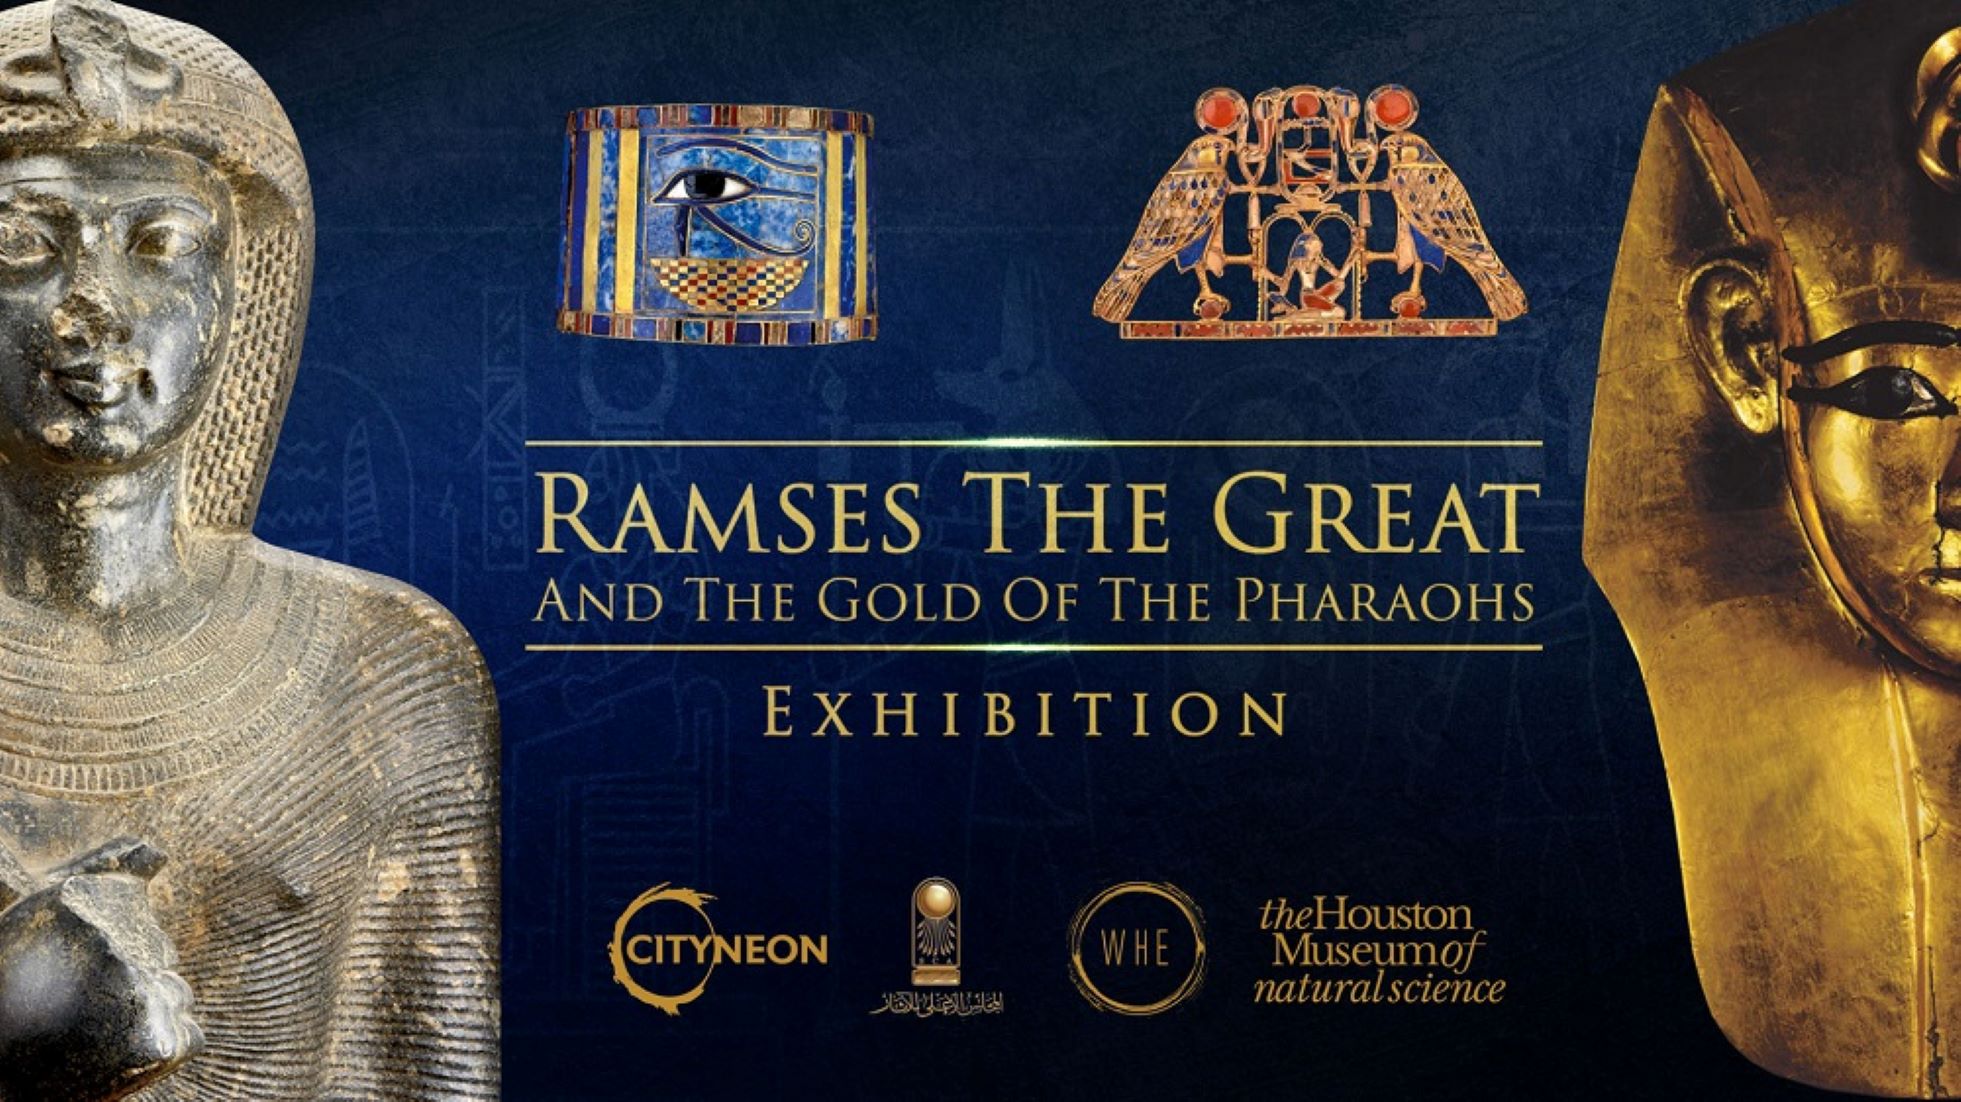 Ramses 2 - Older Games